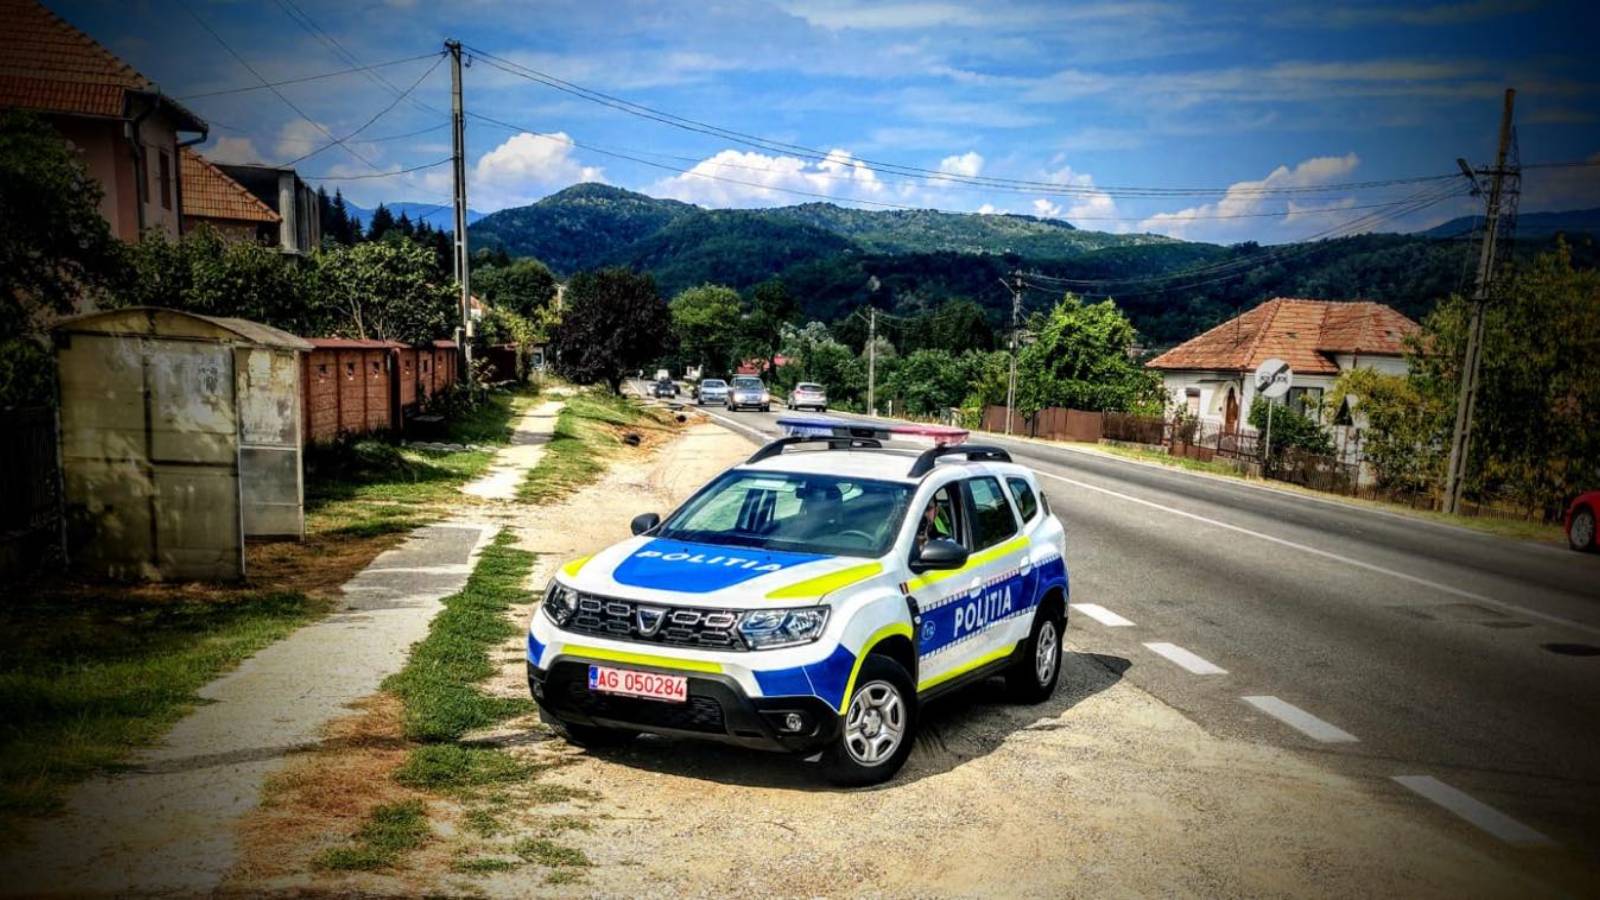 Il messaggio della polizia rumena